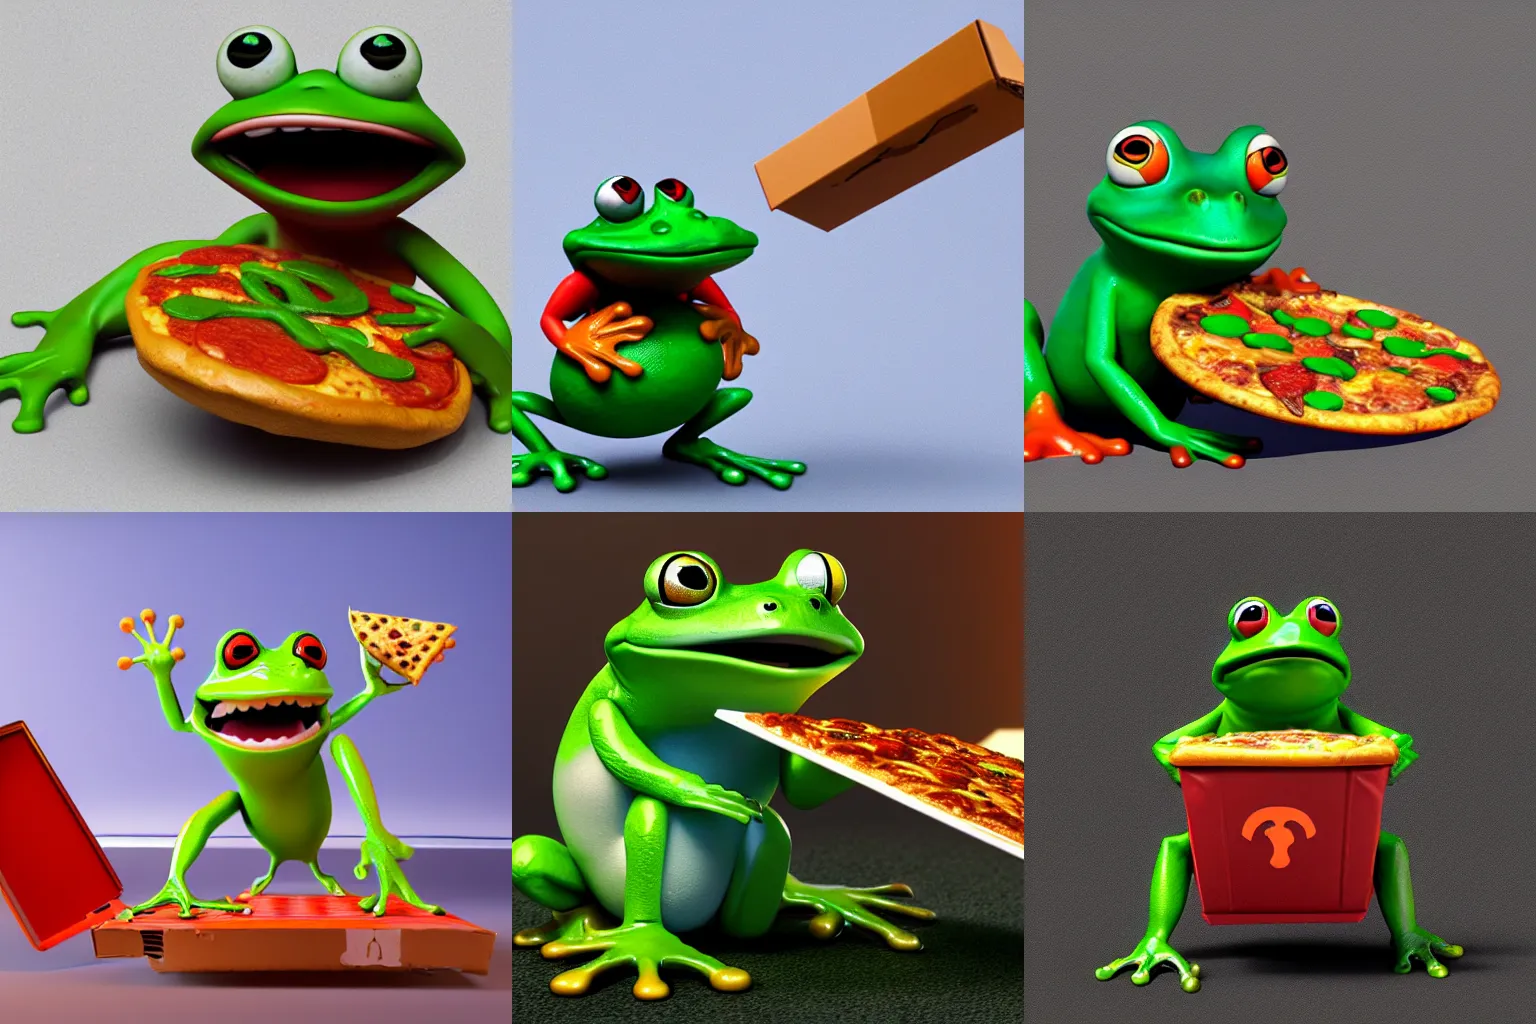 Prompt: 3d Pixar render of a frog delivering pizza, octane, artstation